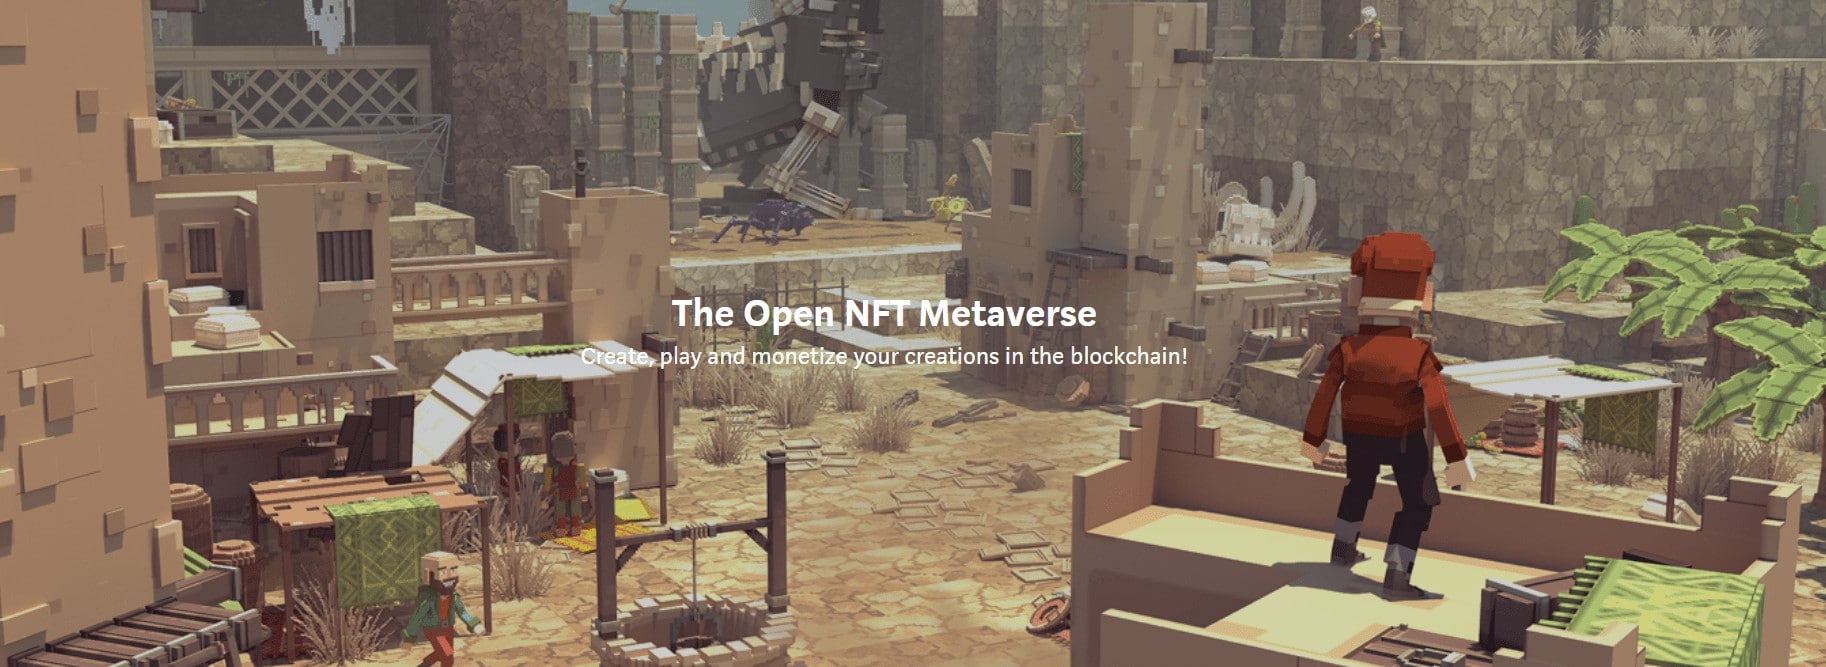 Open Nft Metaverse Min 1